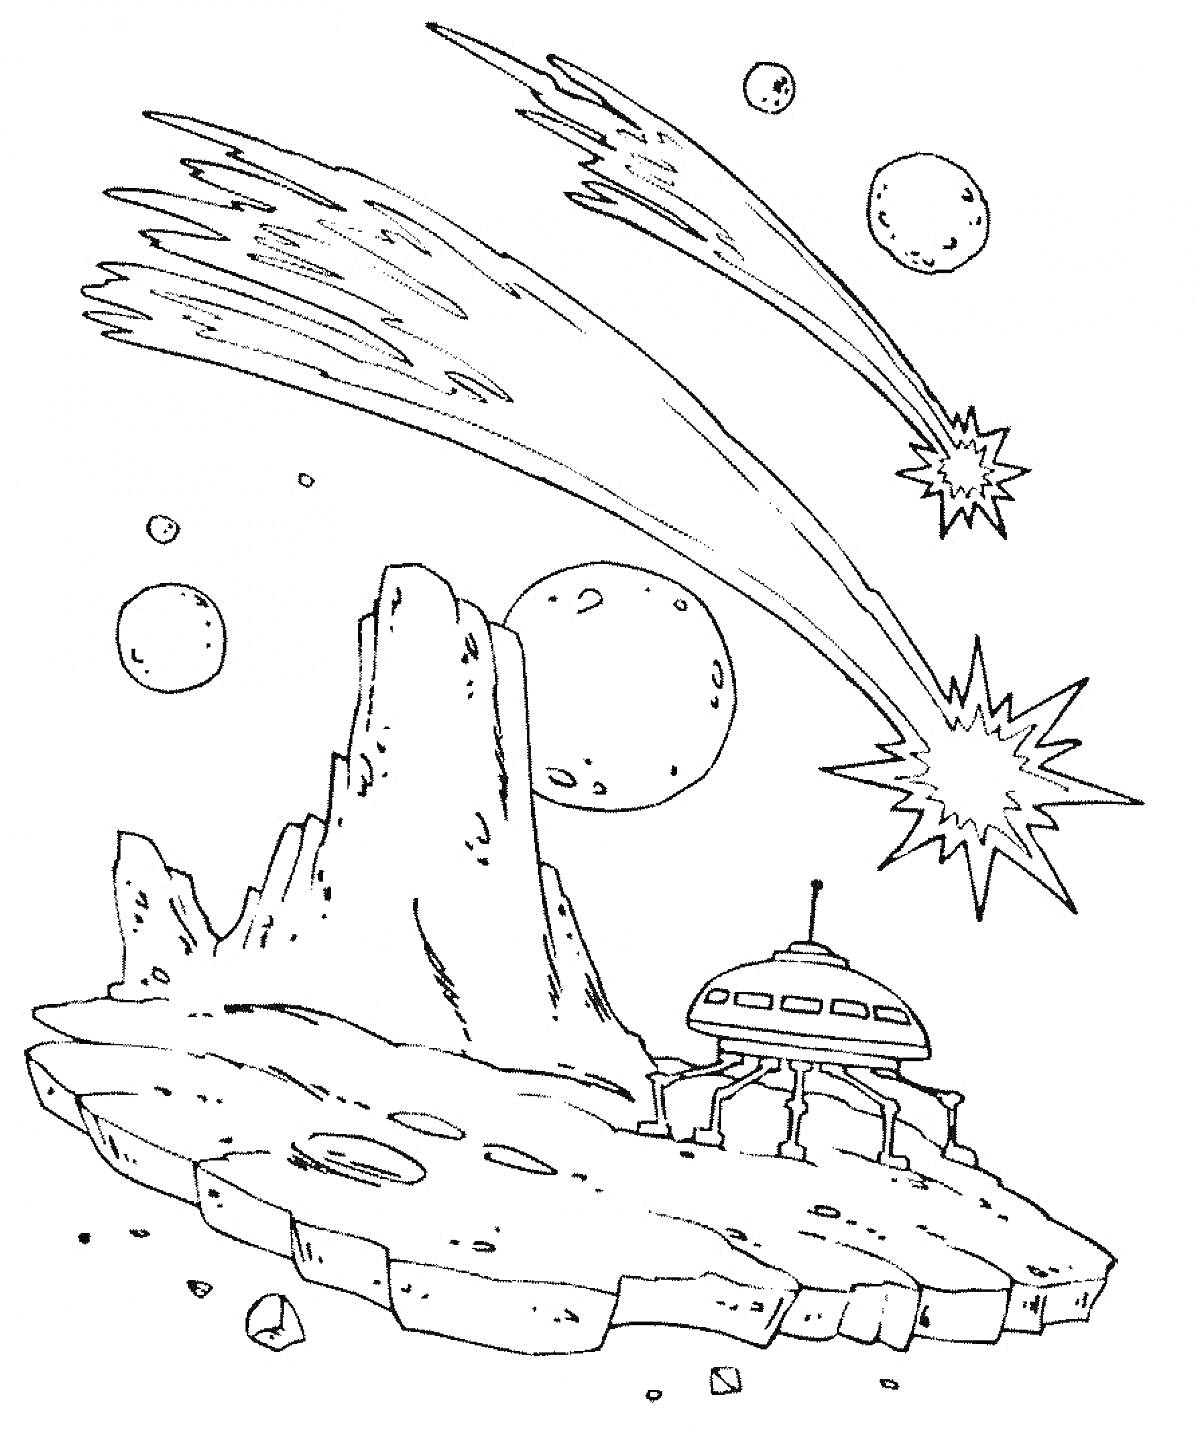 Пейзаж космоса с метеорами, луной, планетами, кратерами и инопланетным кораблем на земле